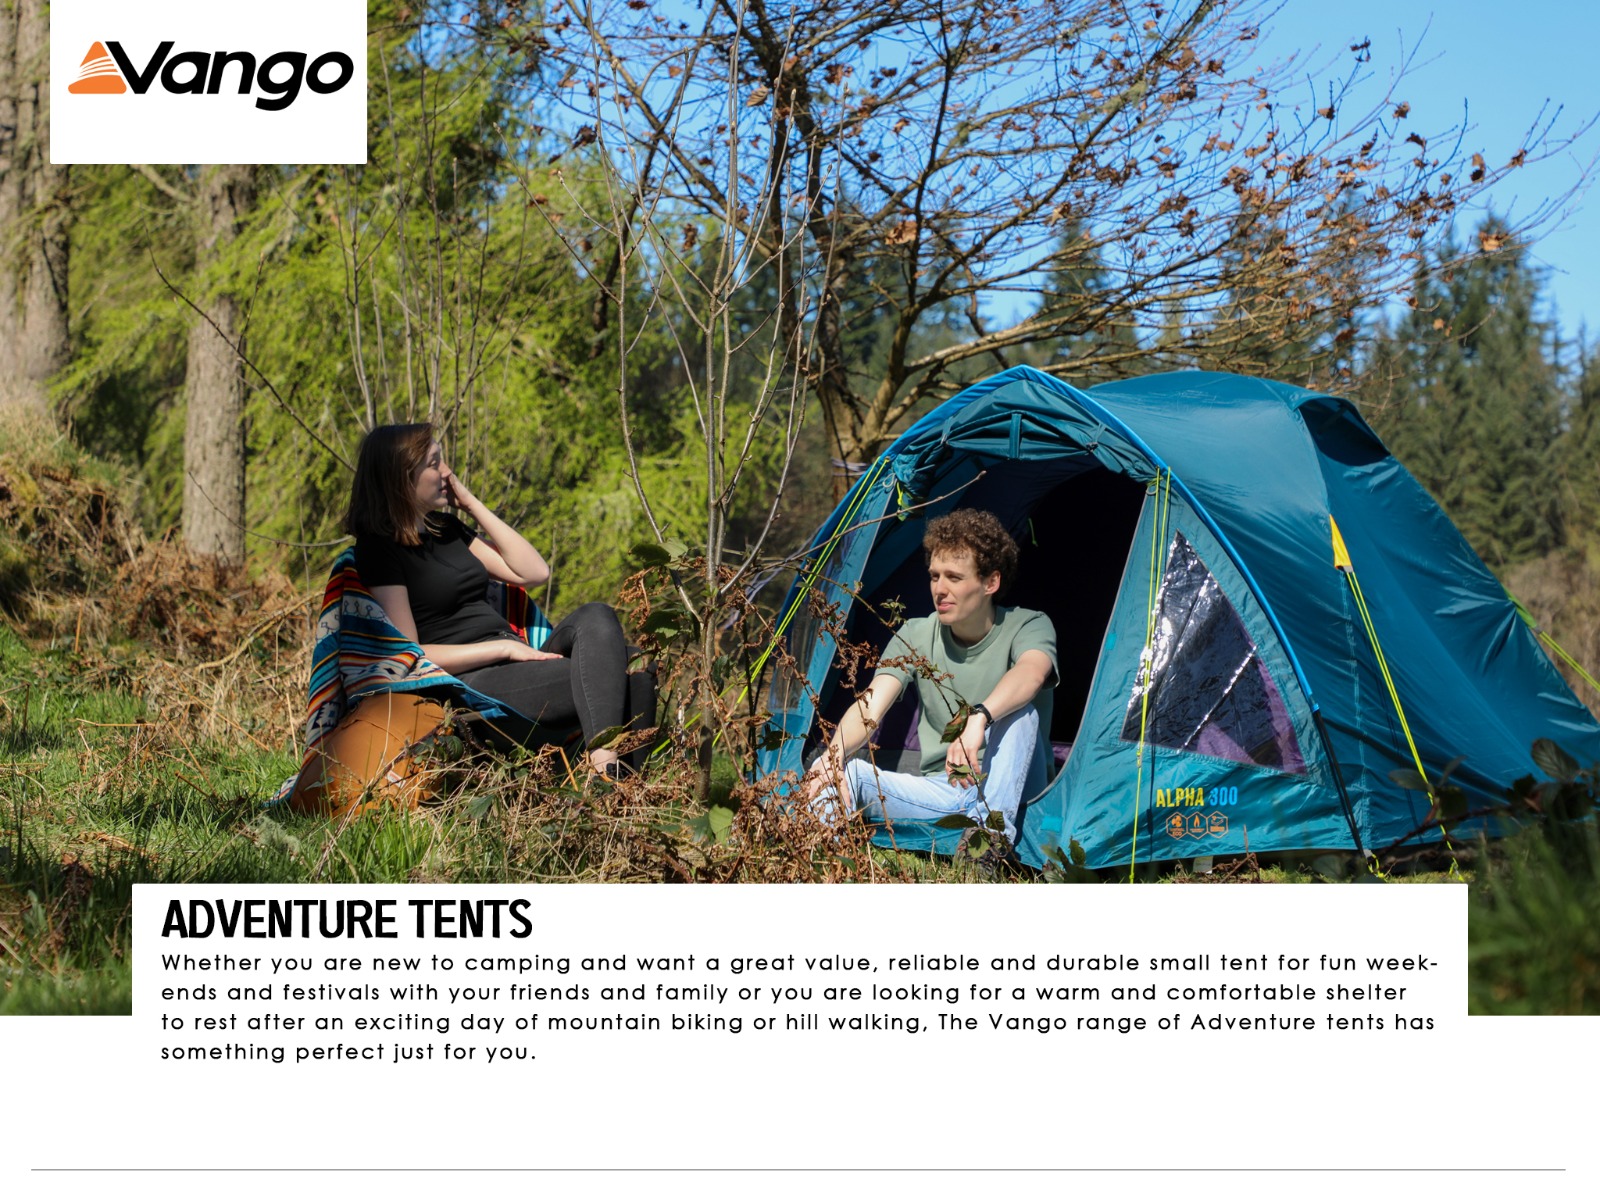 Vango Adventure Tents